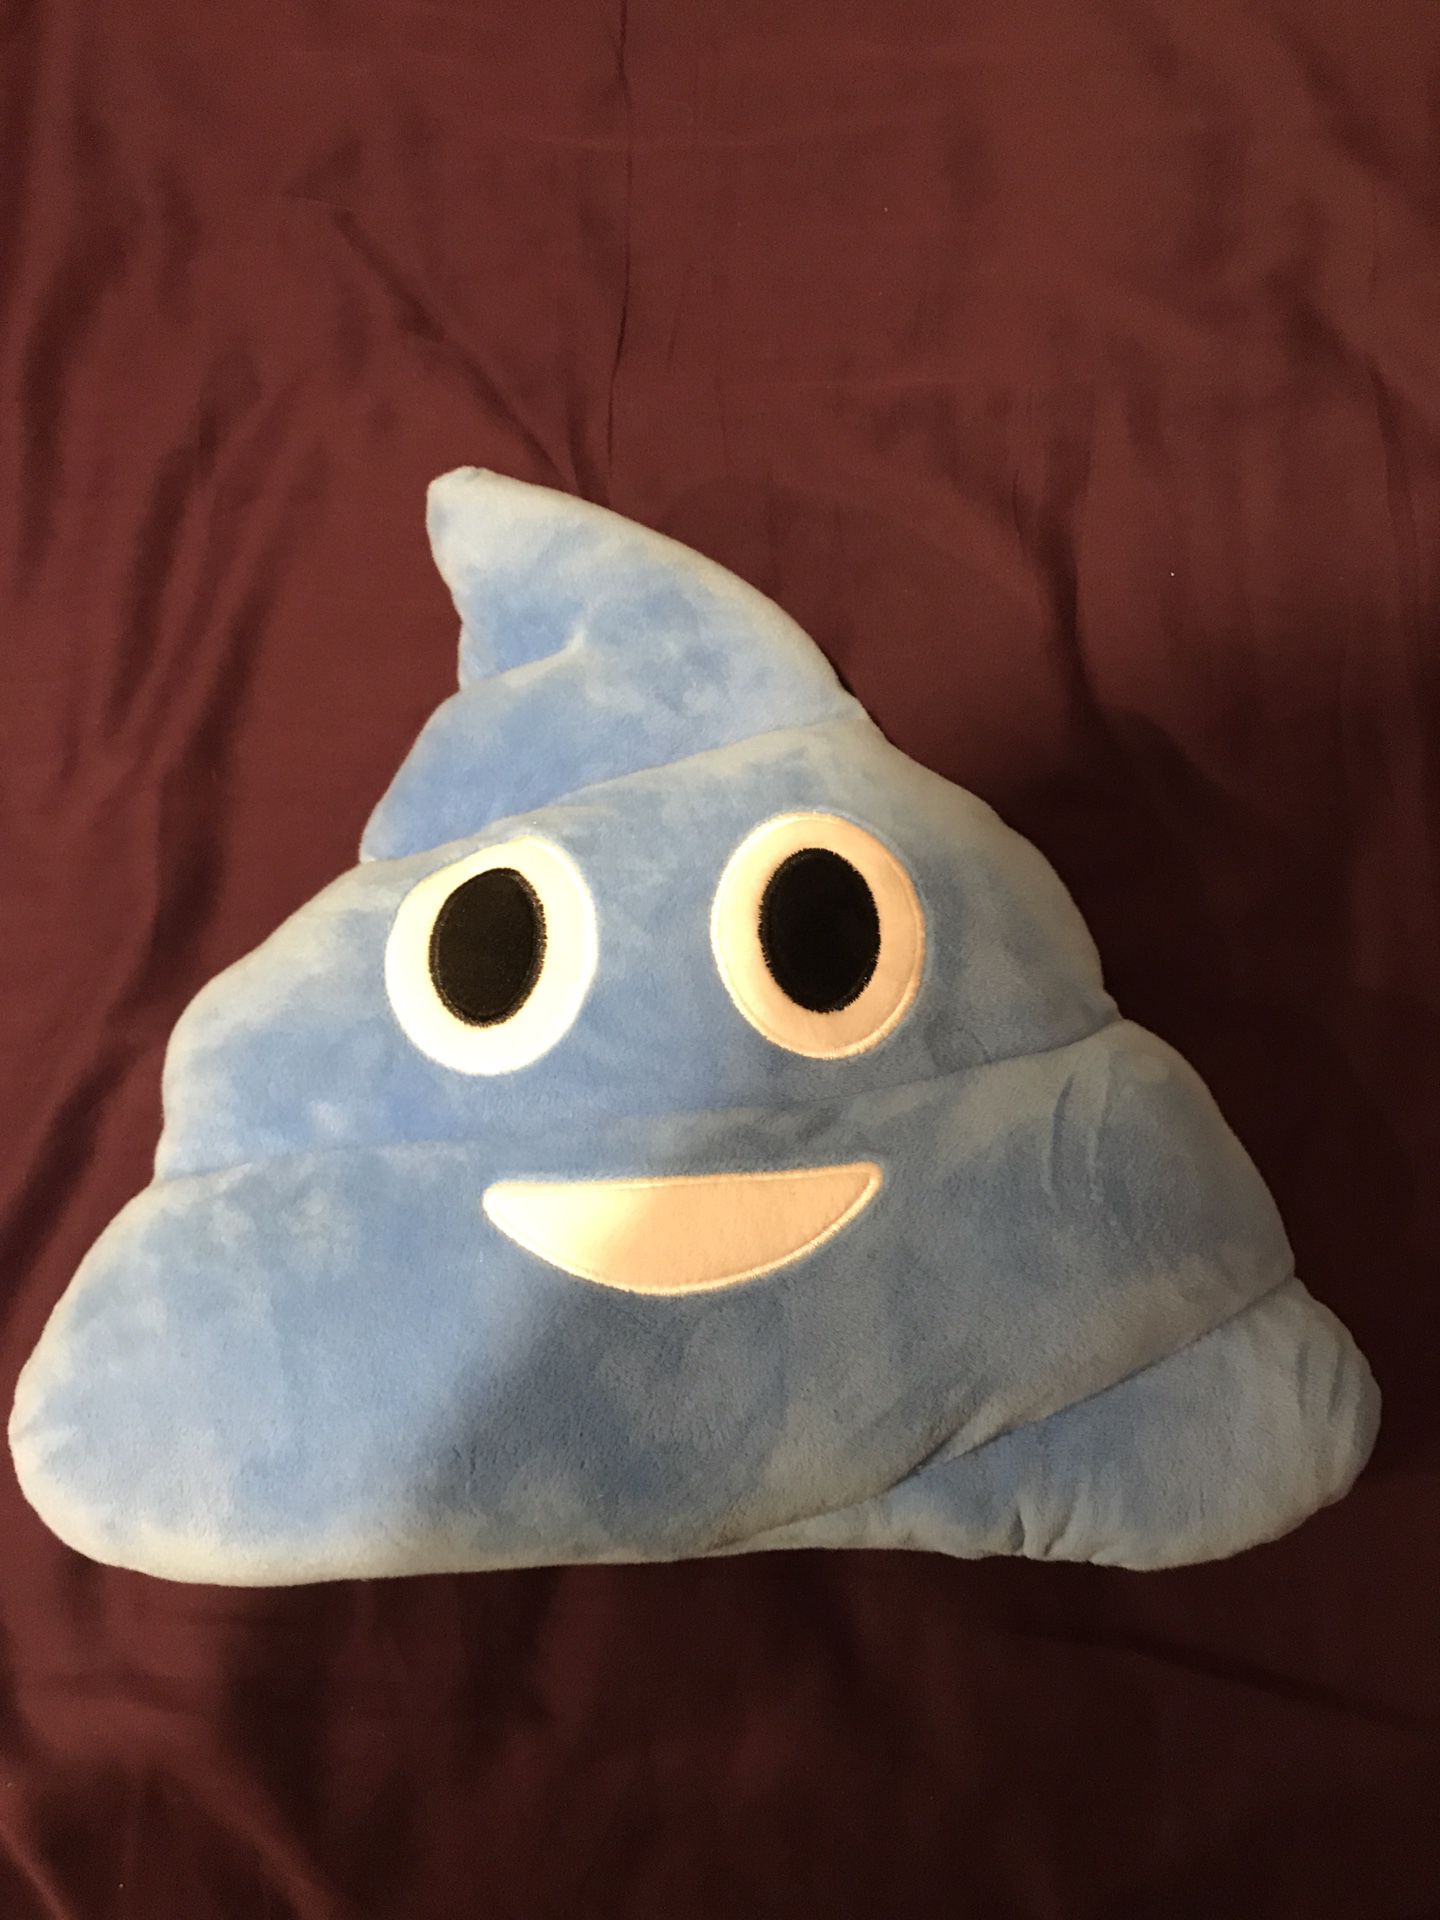 Poop Emoji Stuffed Animal - Poop Emoji Pillow